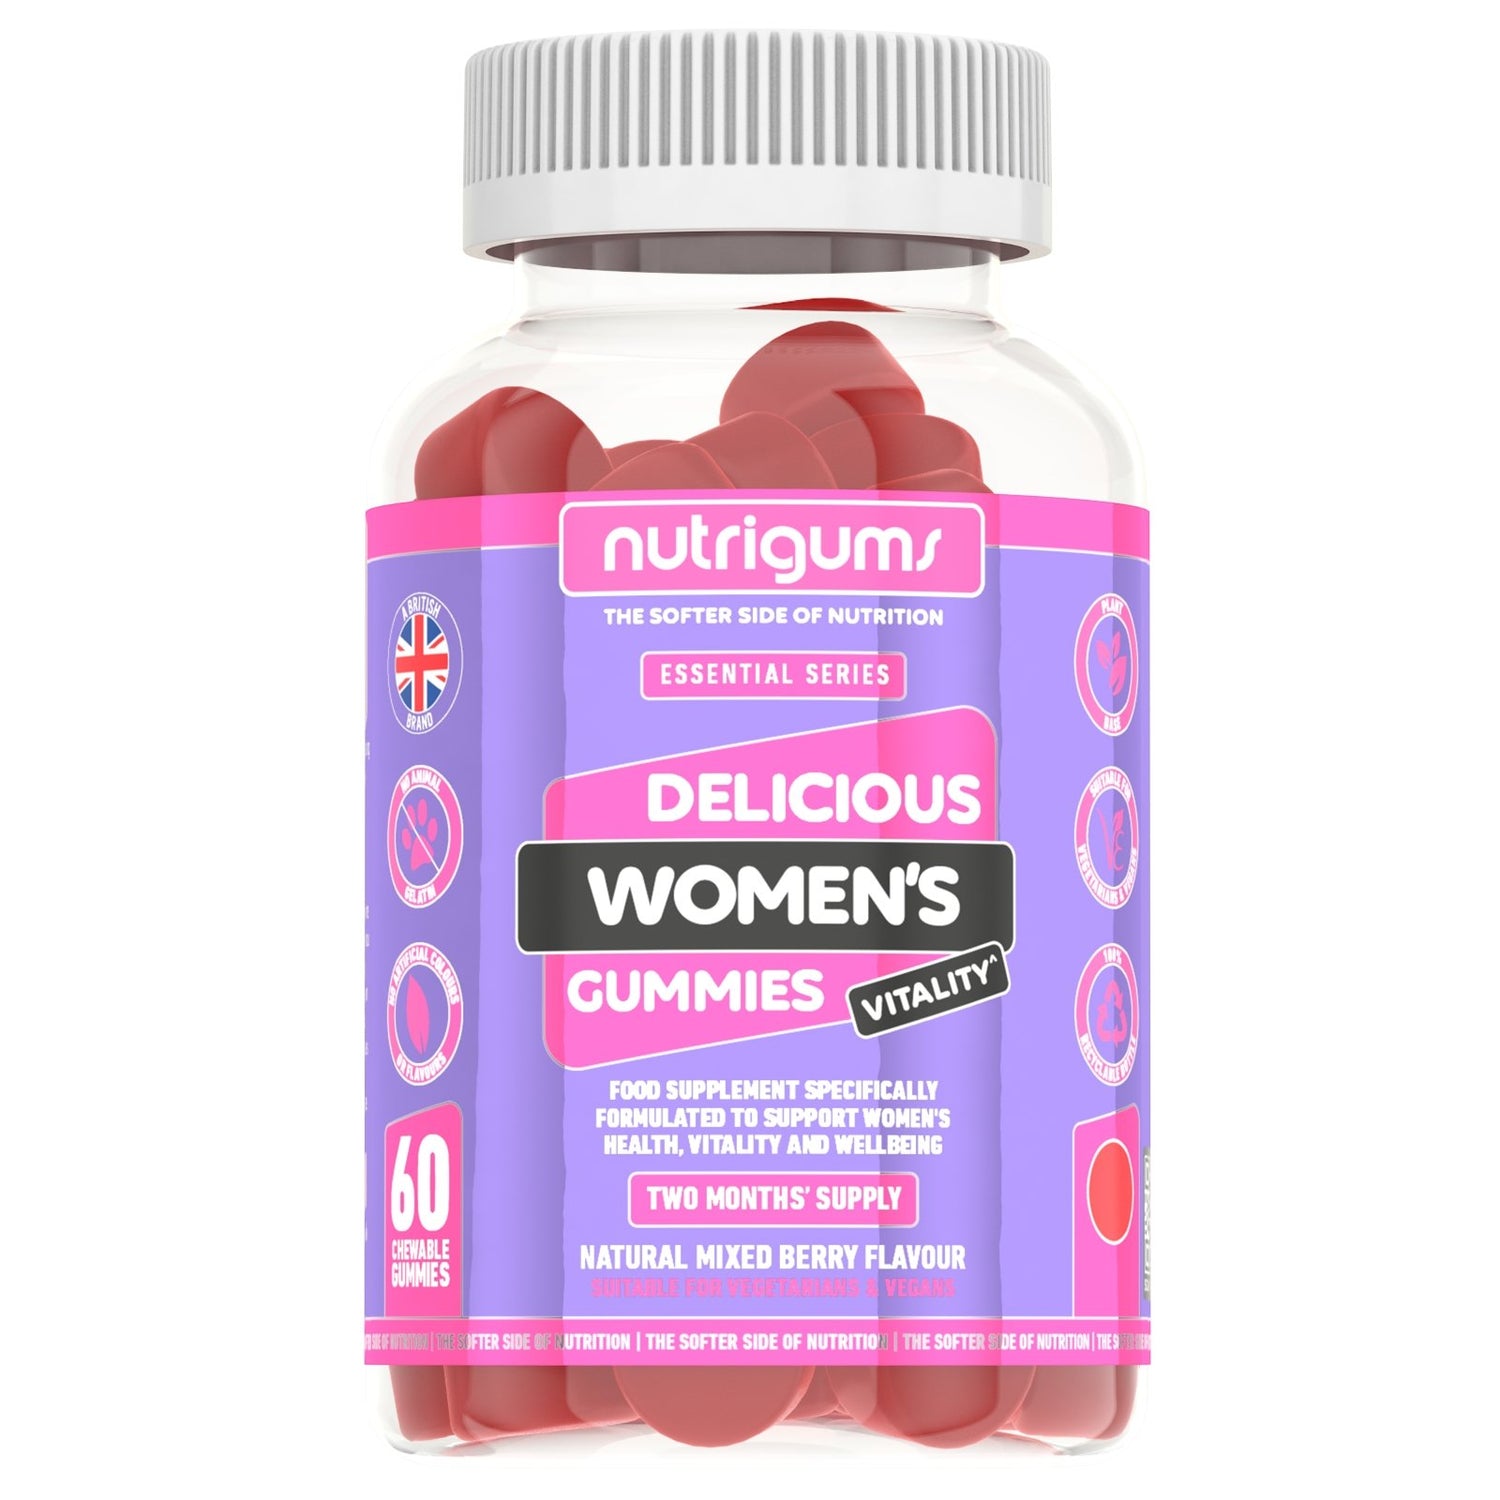 Nutrigums Vitality Multi-vitamine voor vrouwen (60 gummies) - theskinnyfoodco